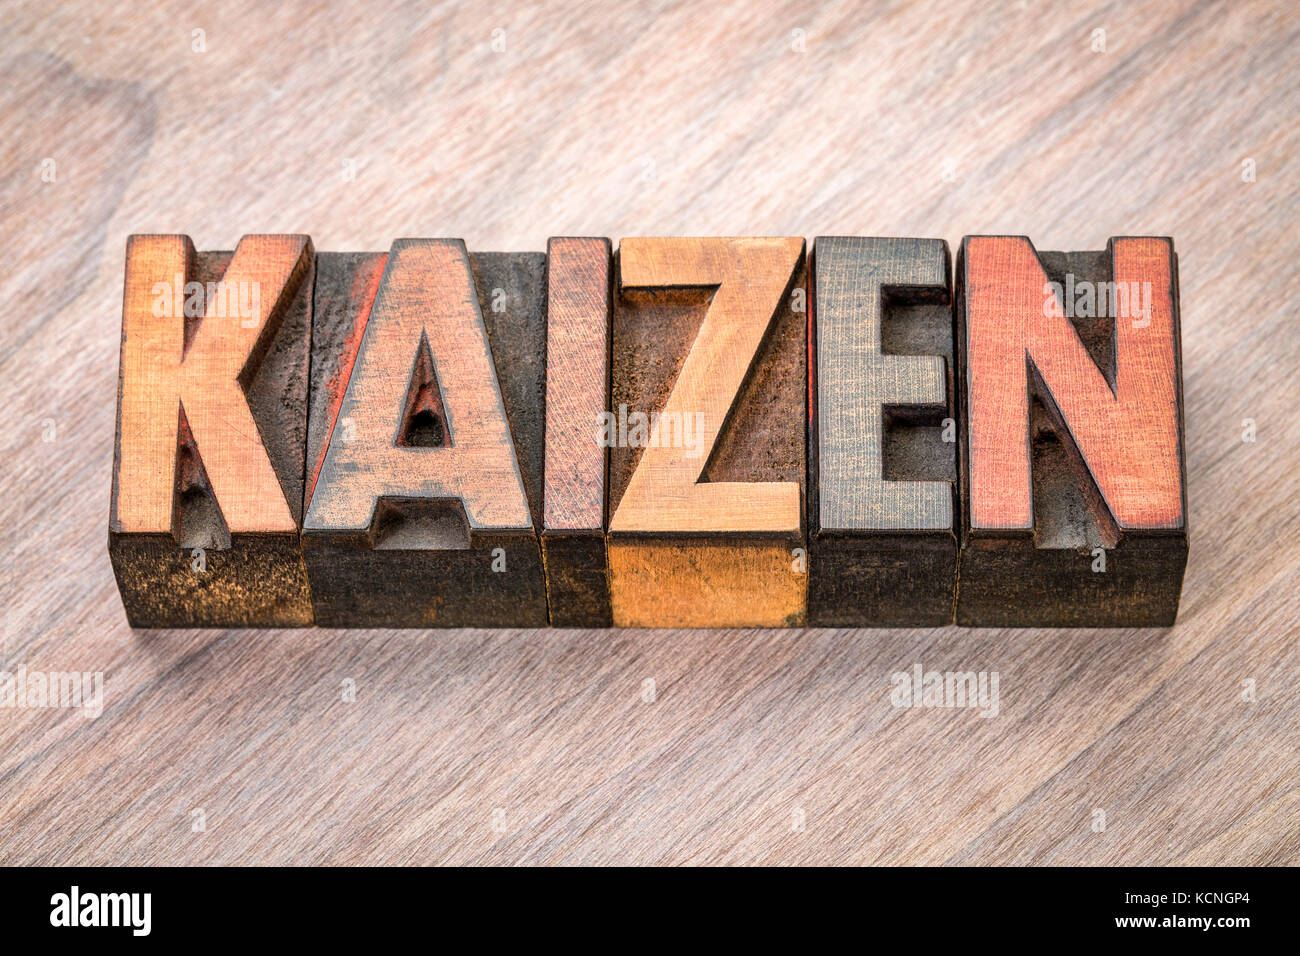 Kaizen - Kontinuierliche Verbesserung der japanischen Begriff - Wort in Vintage buchdruck Holz Art Abstract Stockfoto